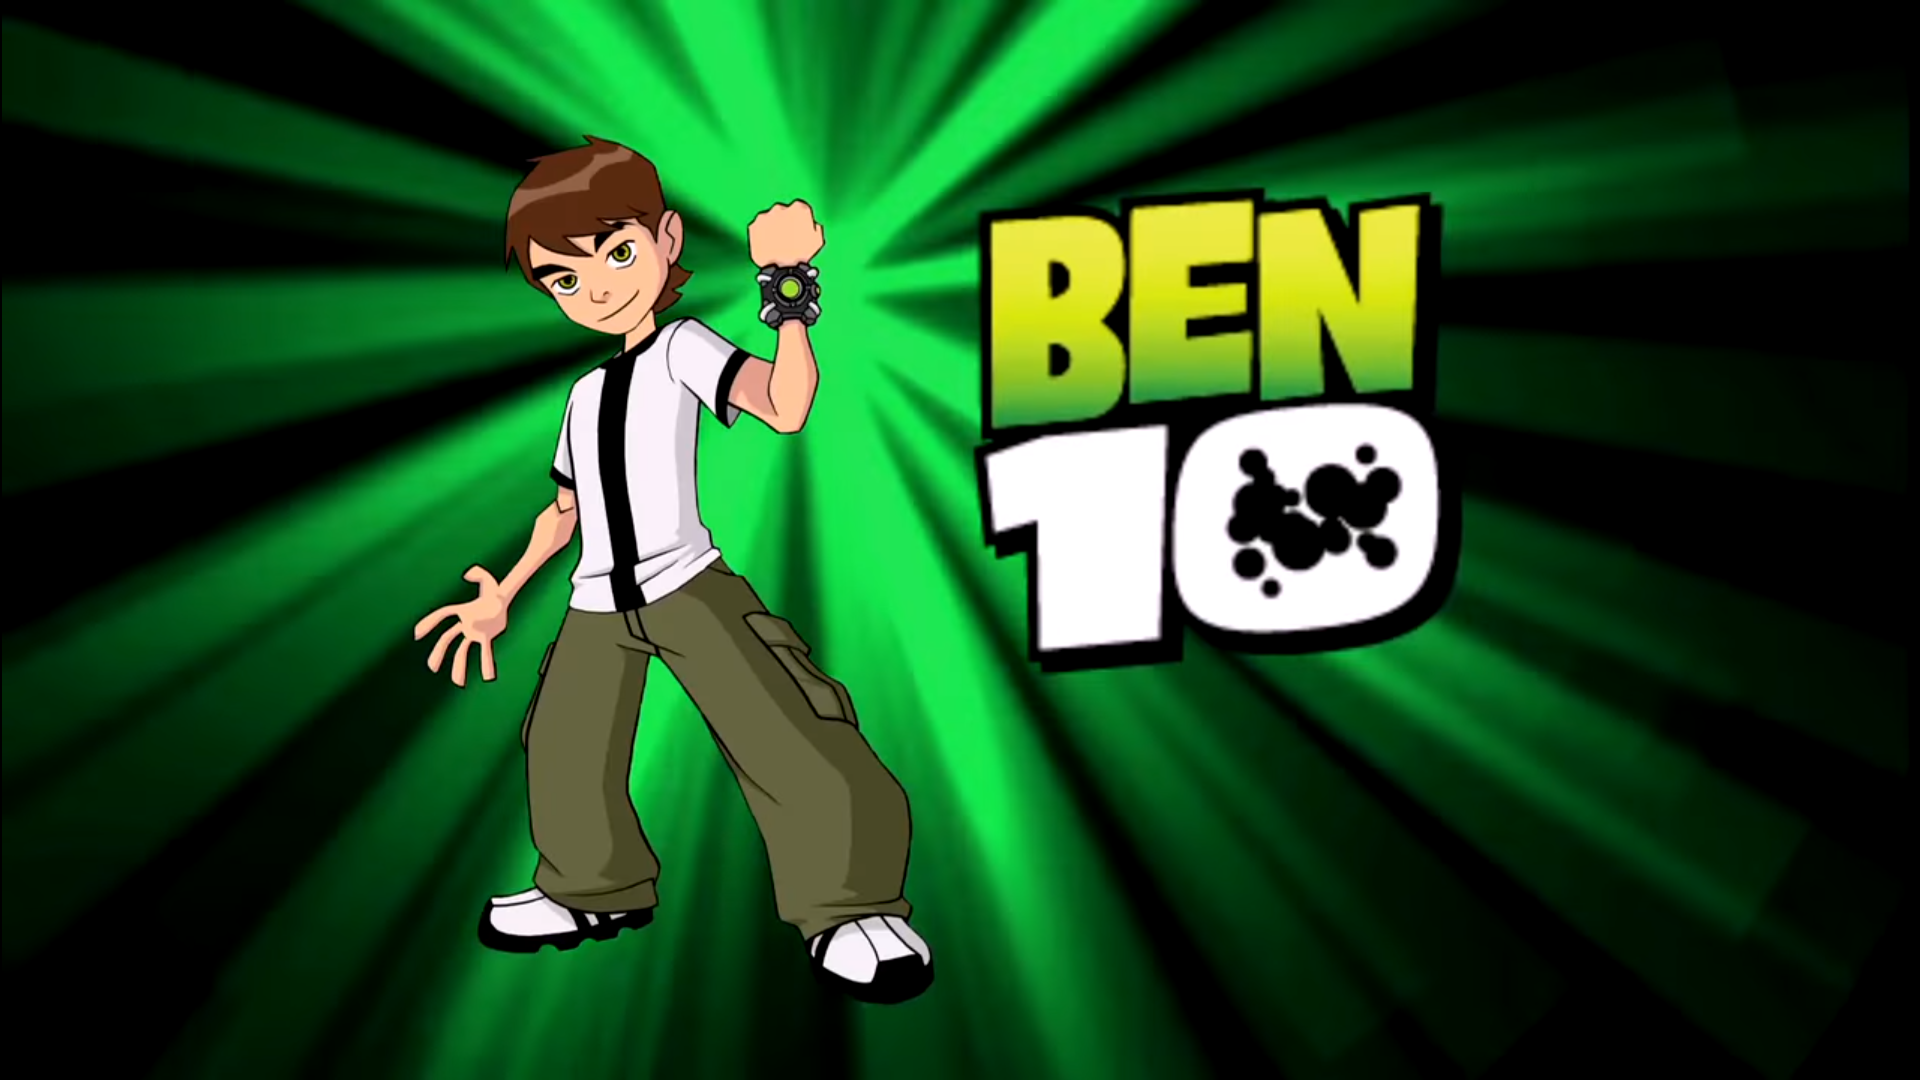 OPENING - Ben 10 